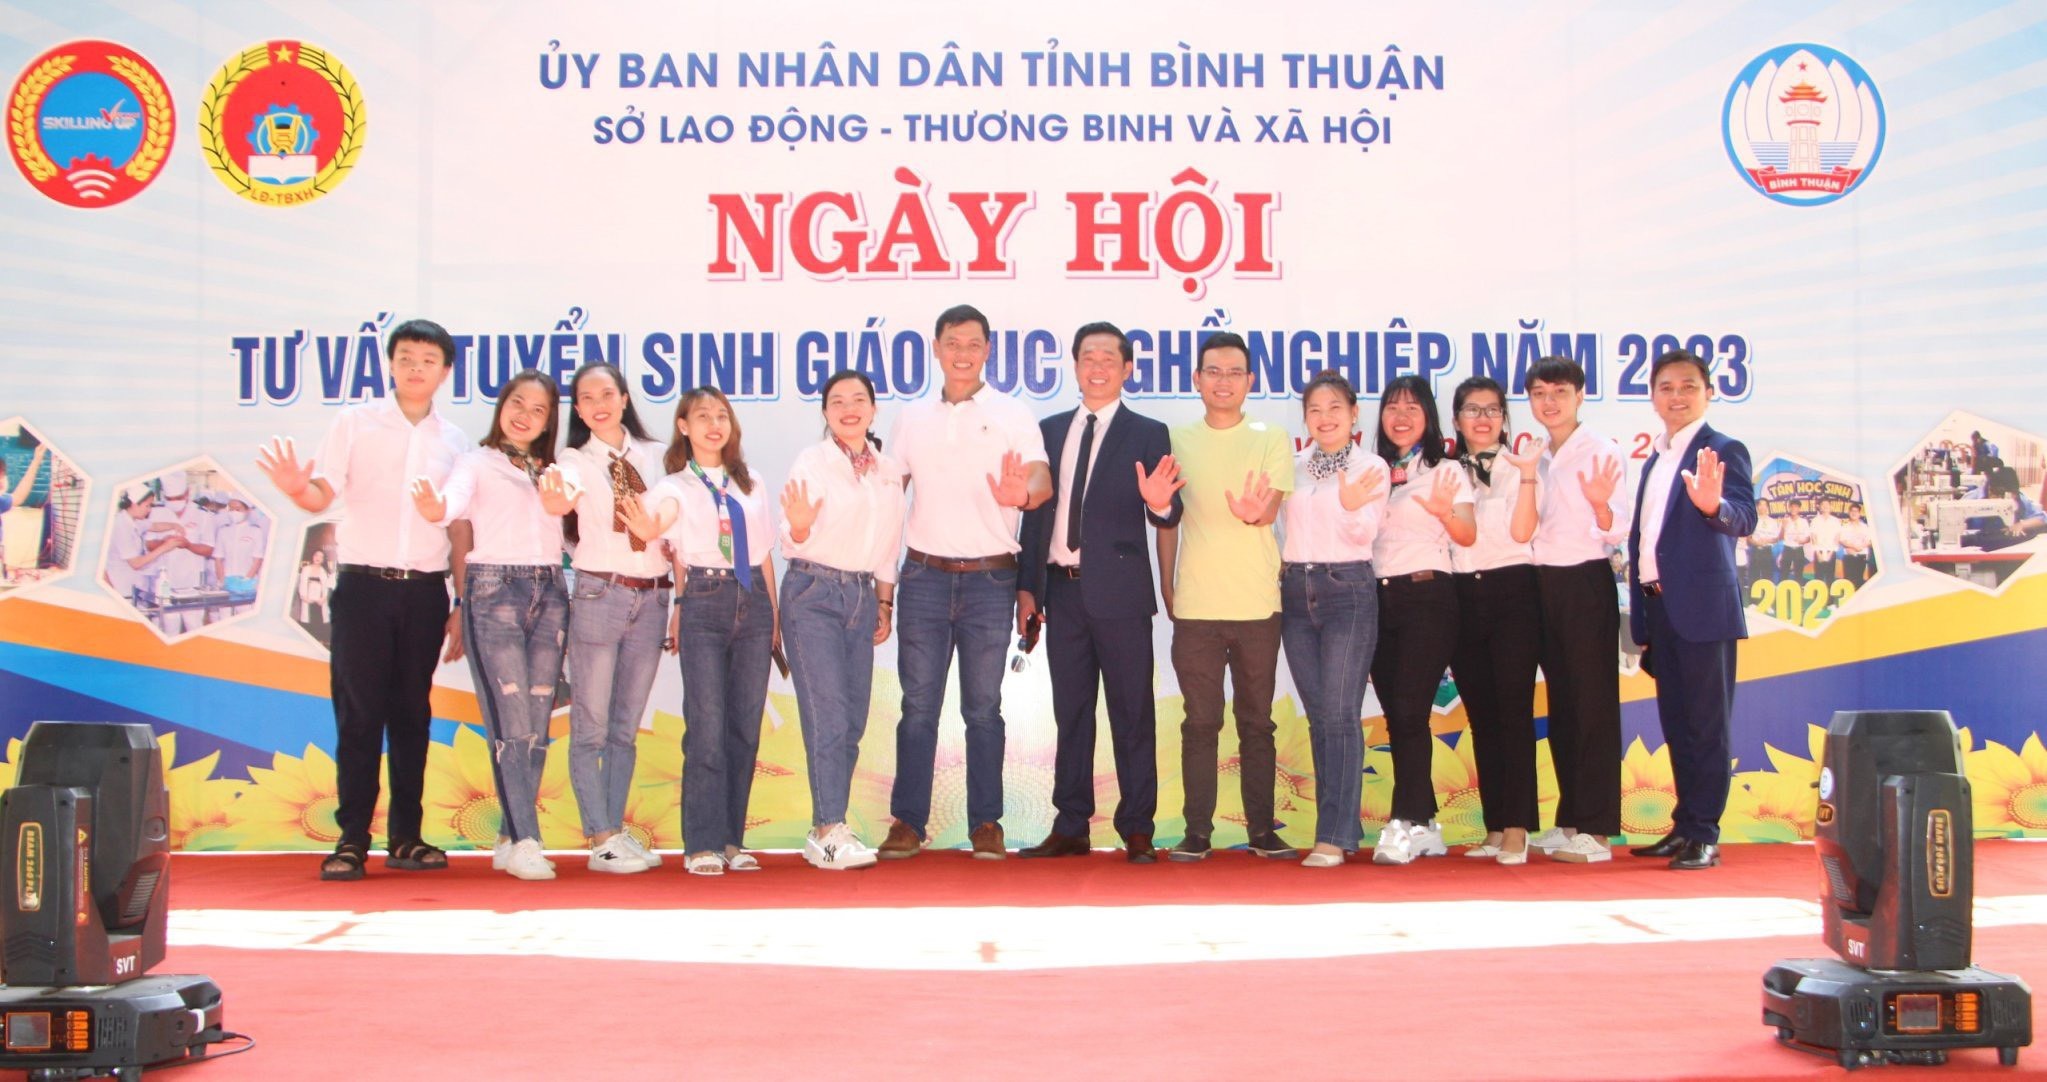 VNAS - Ngày hội tư vấn tuyển sinh, giáo dục nghề nghiệp tại tỉnh Bình Thuận năm 2023